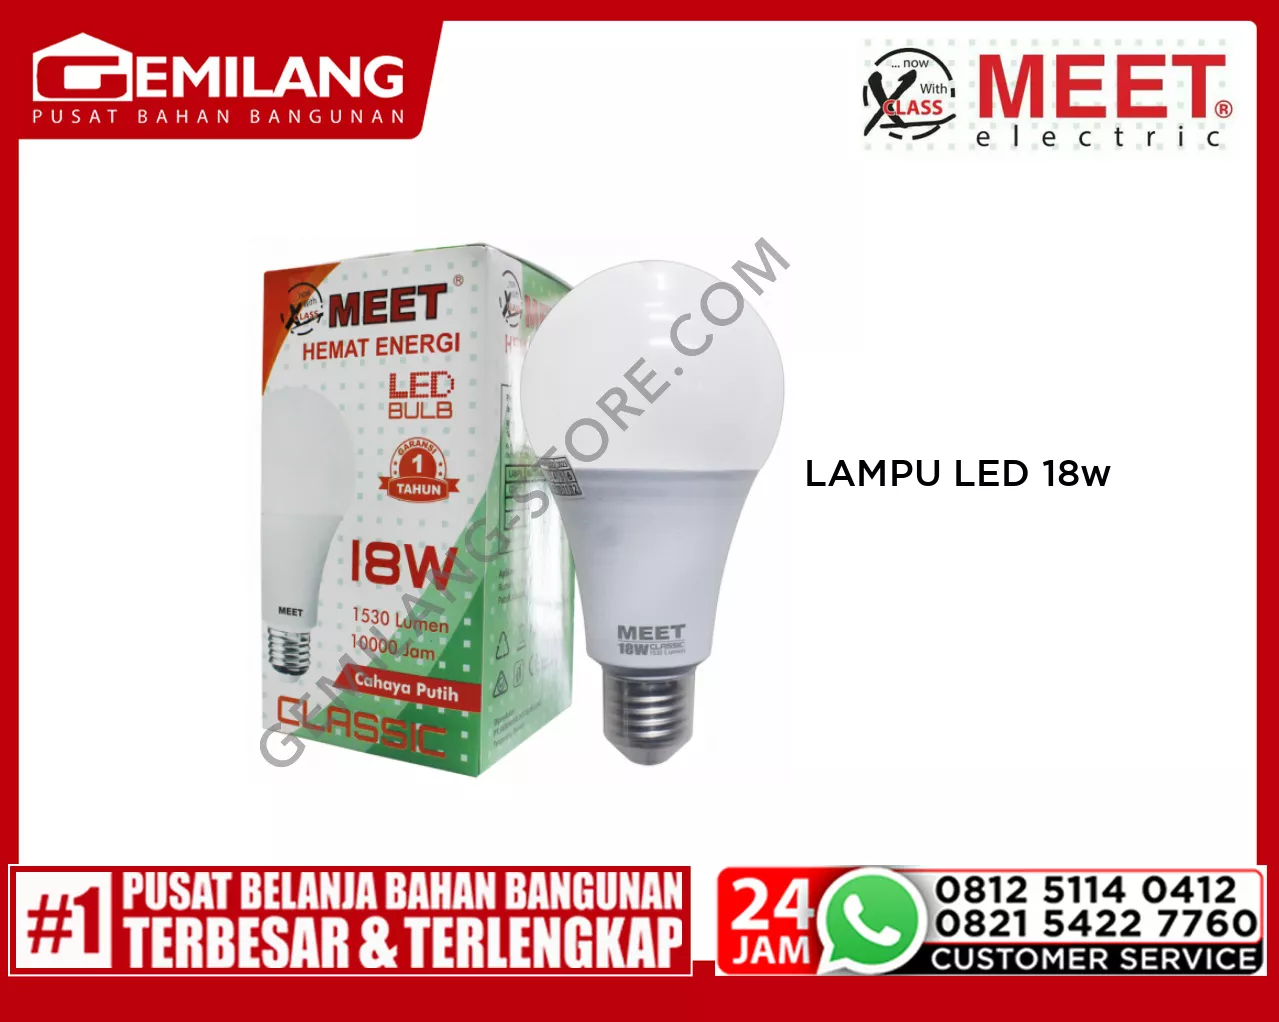 MEET LAMPU LED CLASSIC 18w